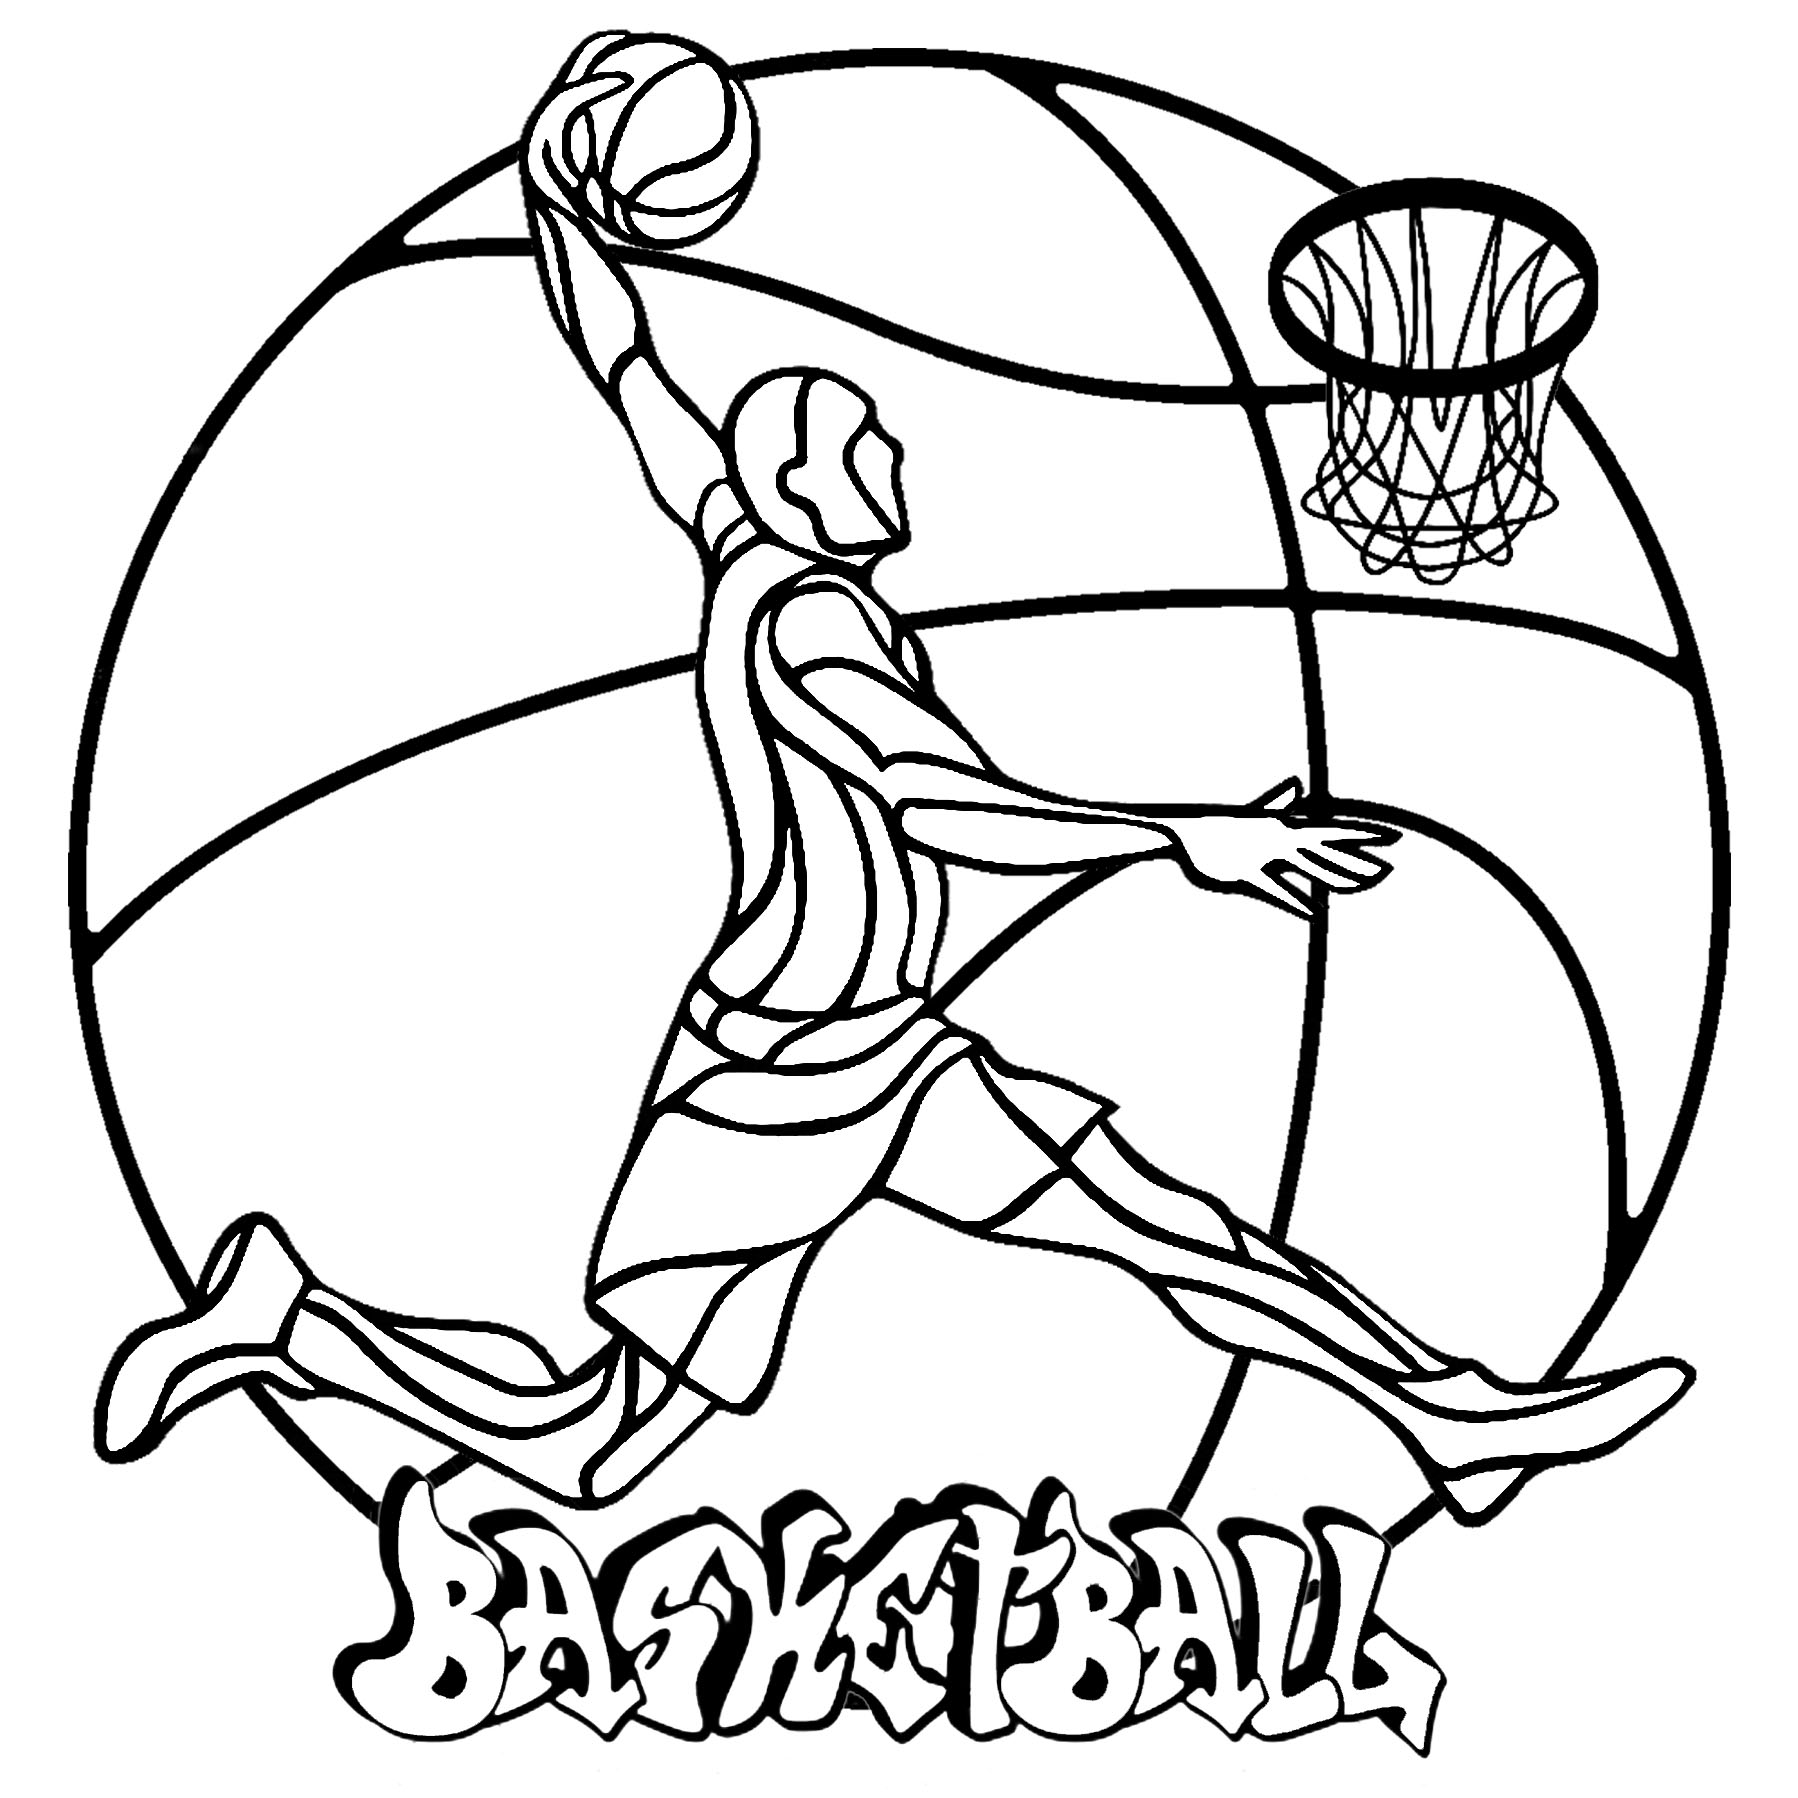 Uma Mandala simples sobre o tema do Basquetebol, com um jogador de basquetebol, uma bola, um cesto e uma etiqueta 'Basquetebol', Artista : Art'Isabelle